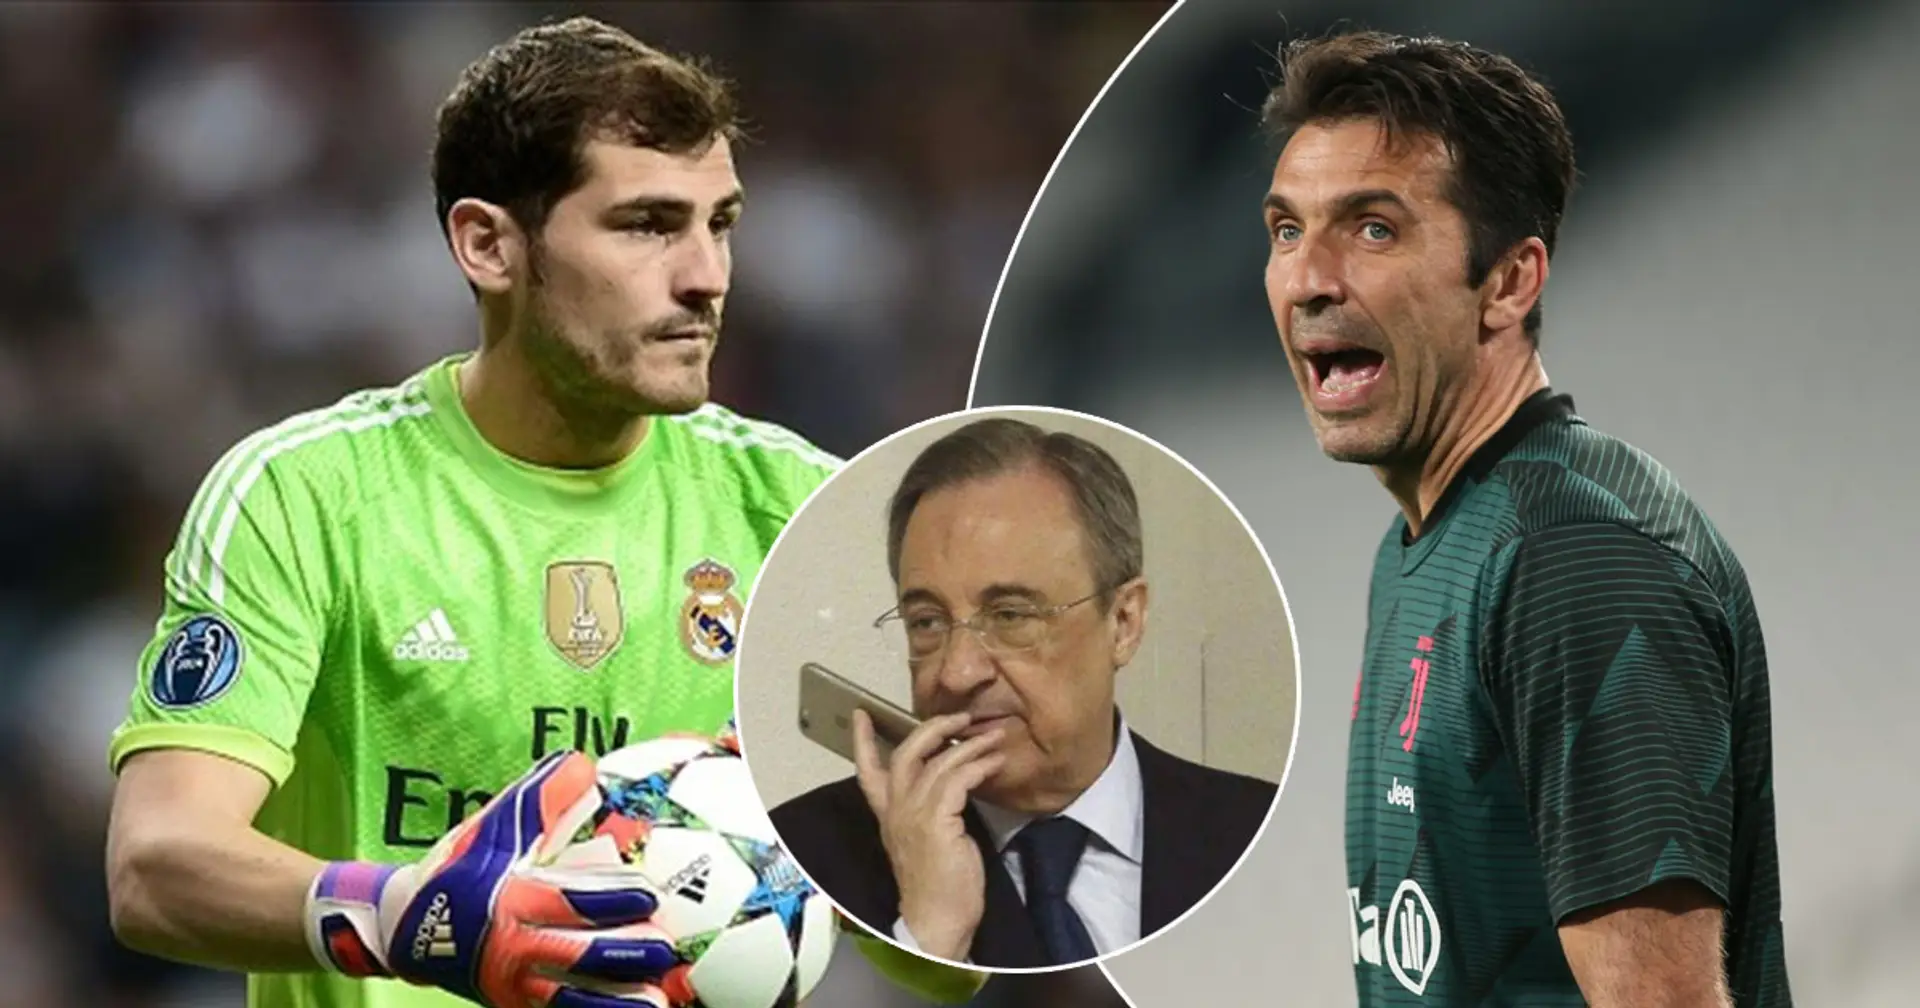 "Casillas n'est pas un gardien de but pour Madrid. Je signerais Buffon": de nouvelles parties de l'audio de Perez 2006 ont fuité